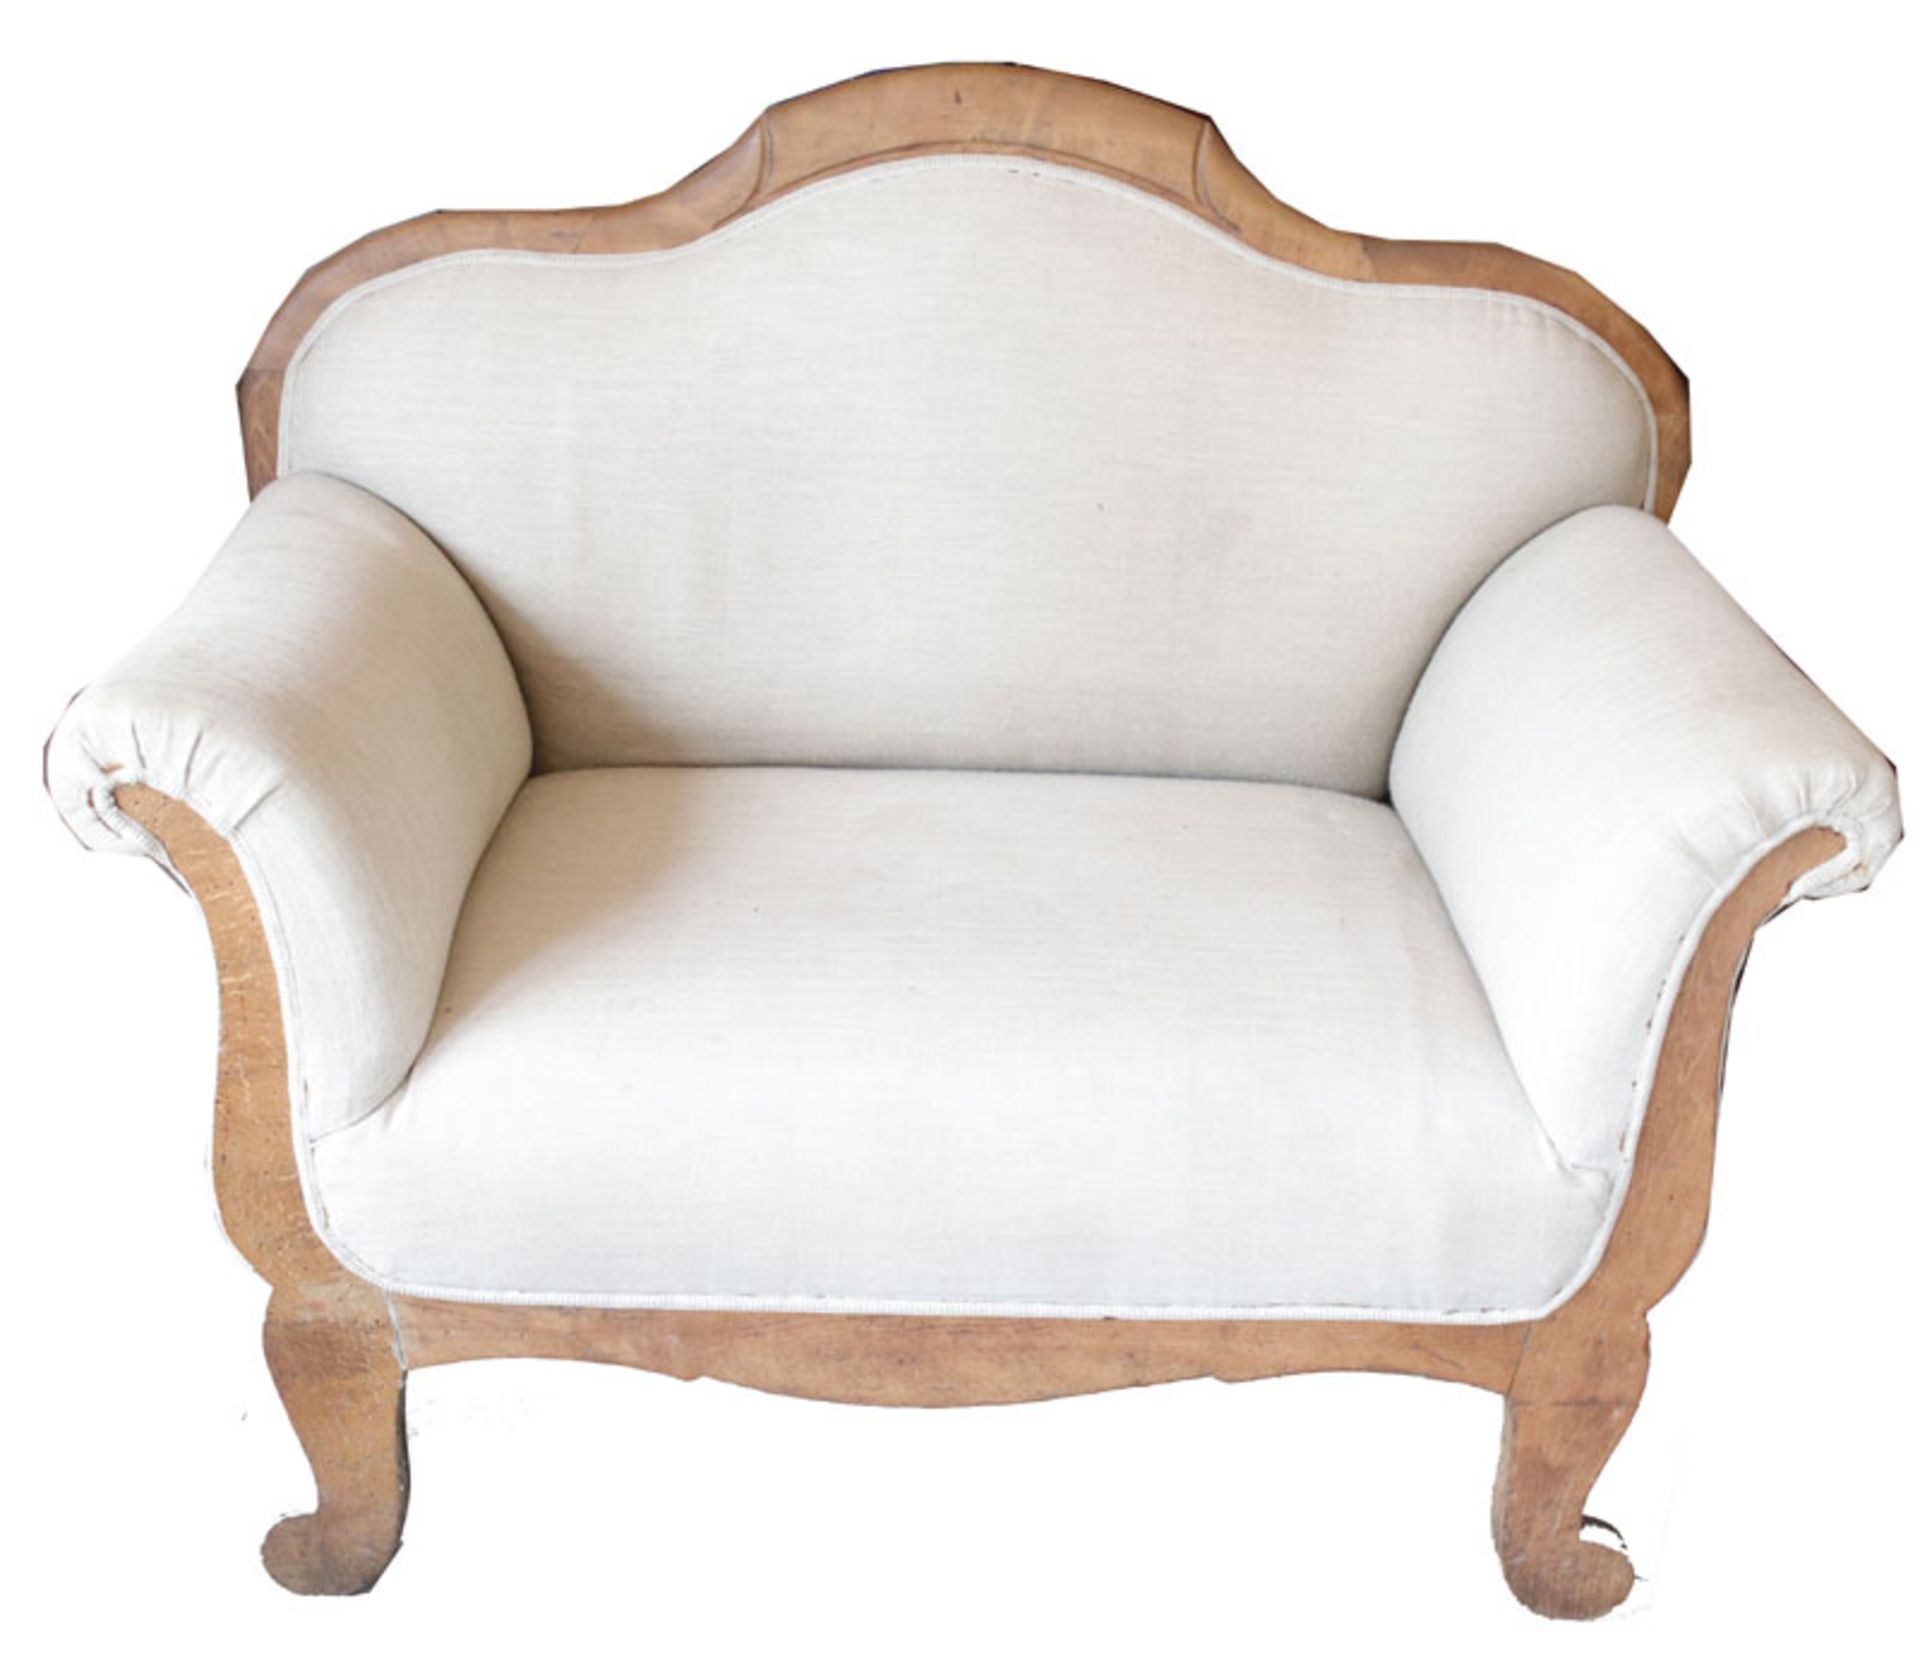 Sofa, Holzrahmen in geschwungener Form gepolstert und beige bezogen, 19. Jahrhundert, Gebrauchs- und